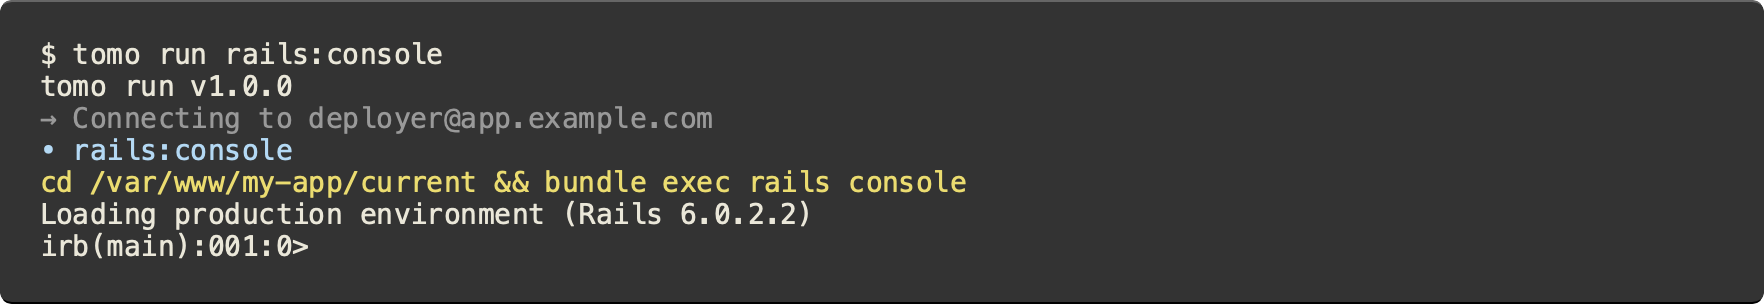 $ tomo run rails:console